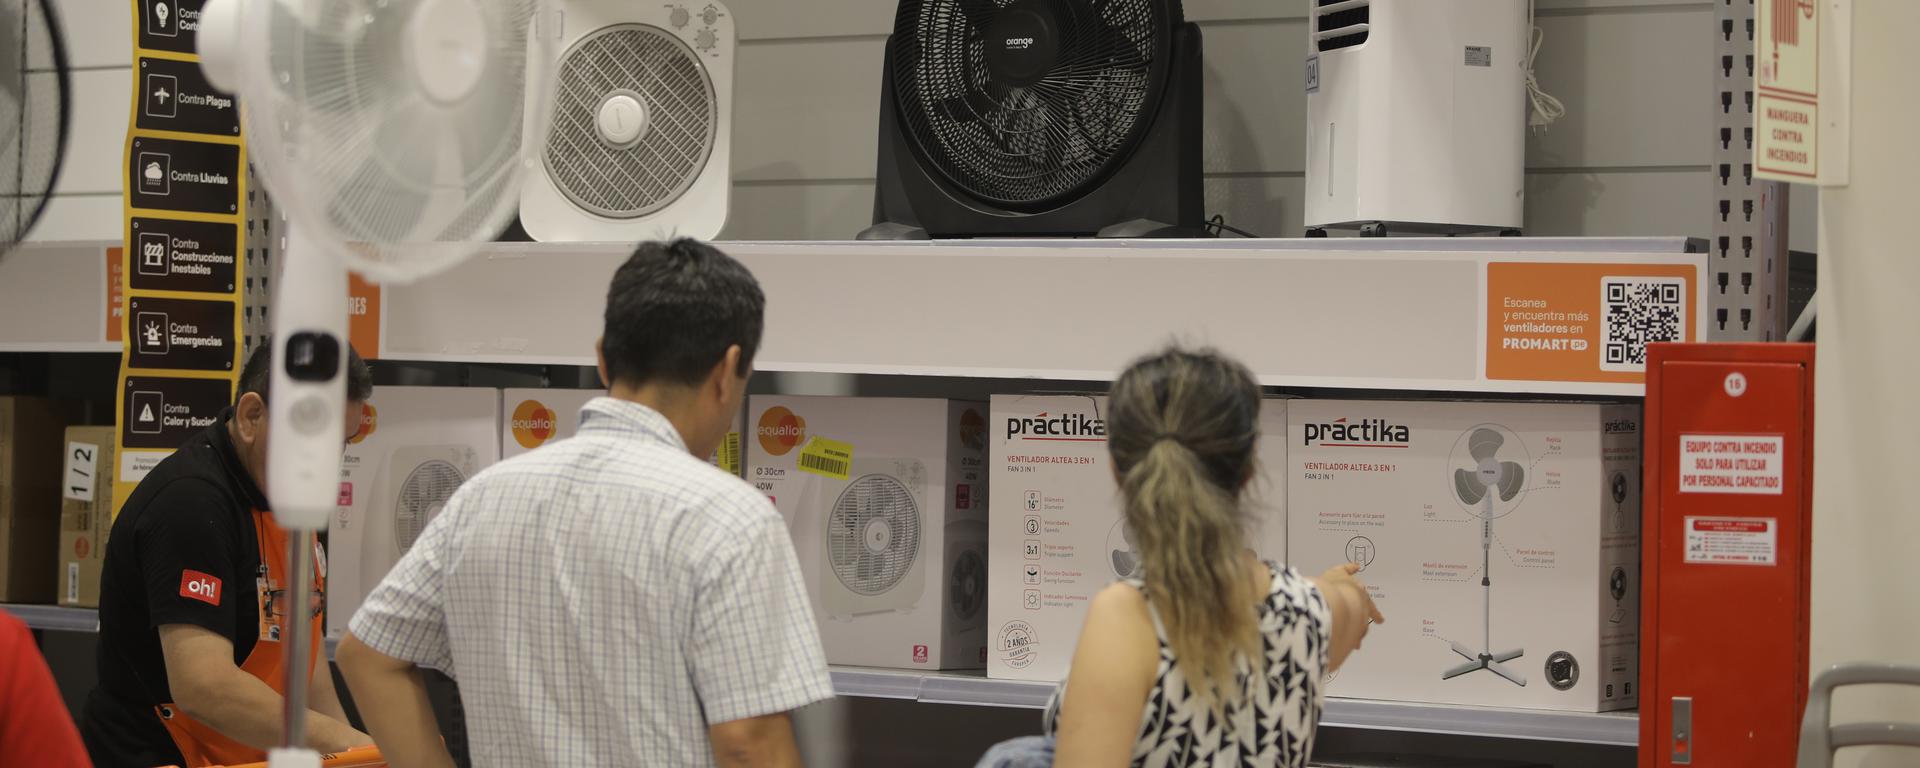 Ola de calor: ¿cómo va la demanda y el stock de aires acondicionados y ventiladores?